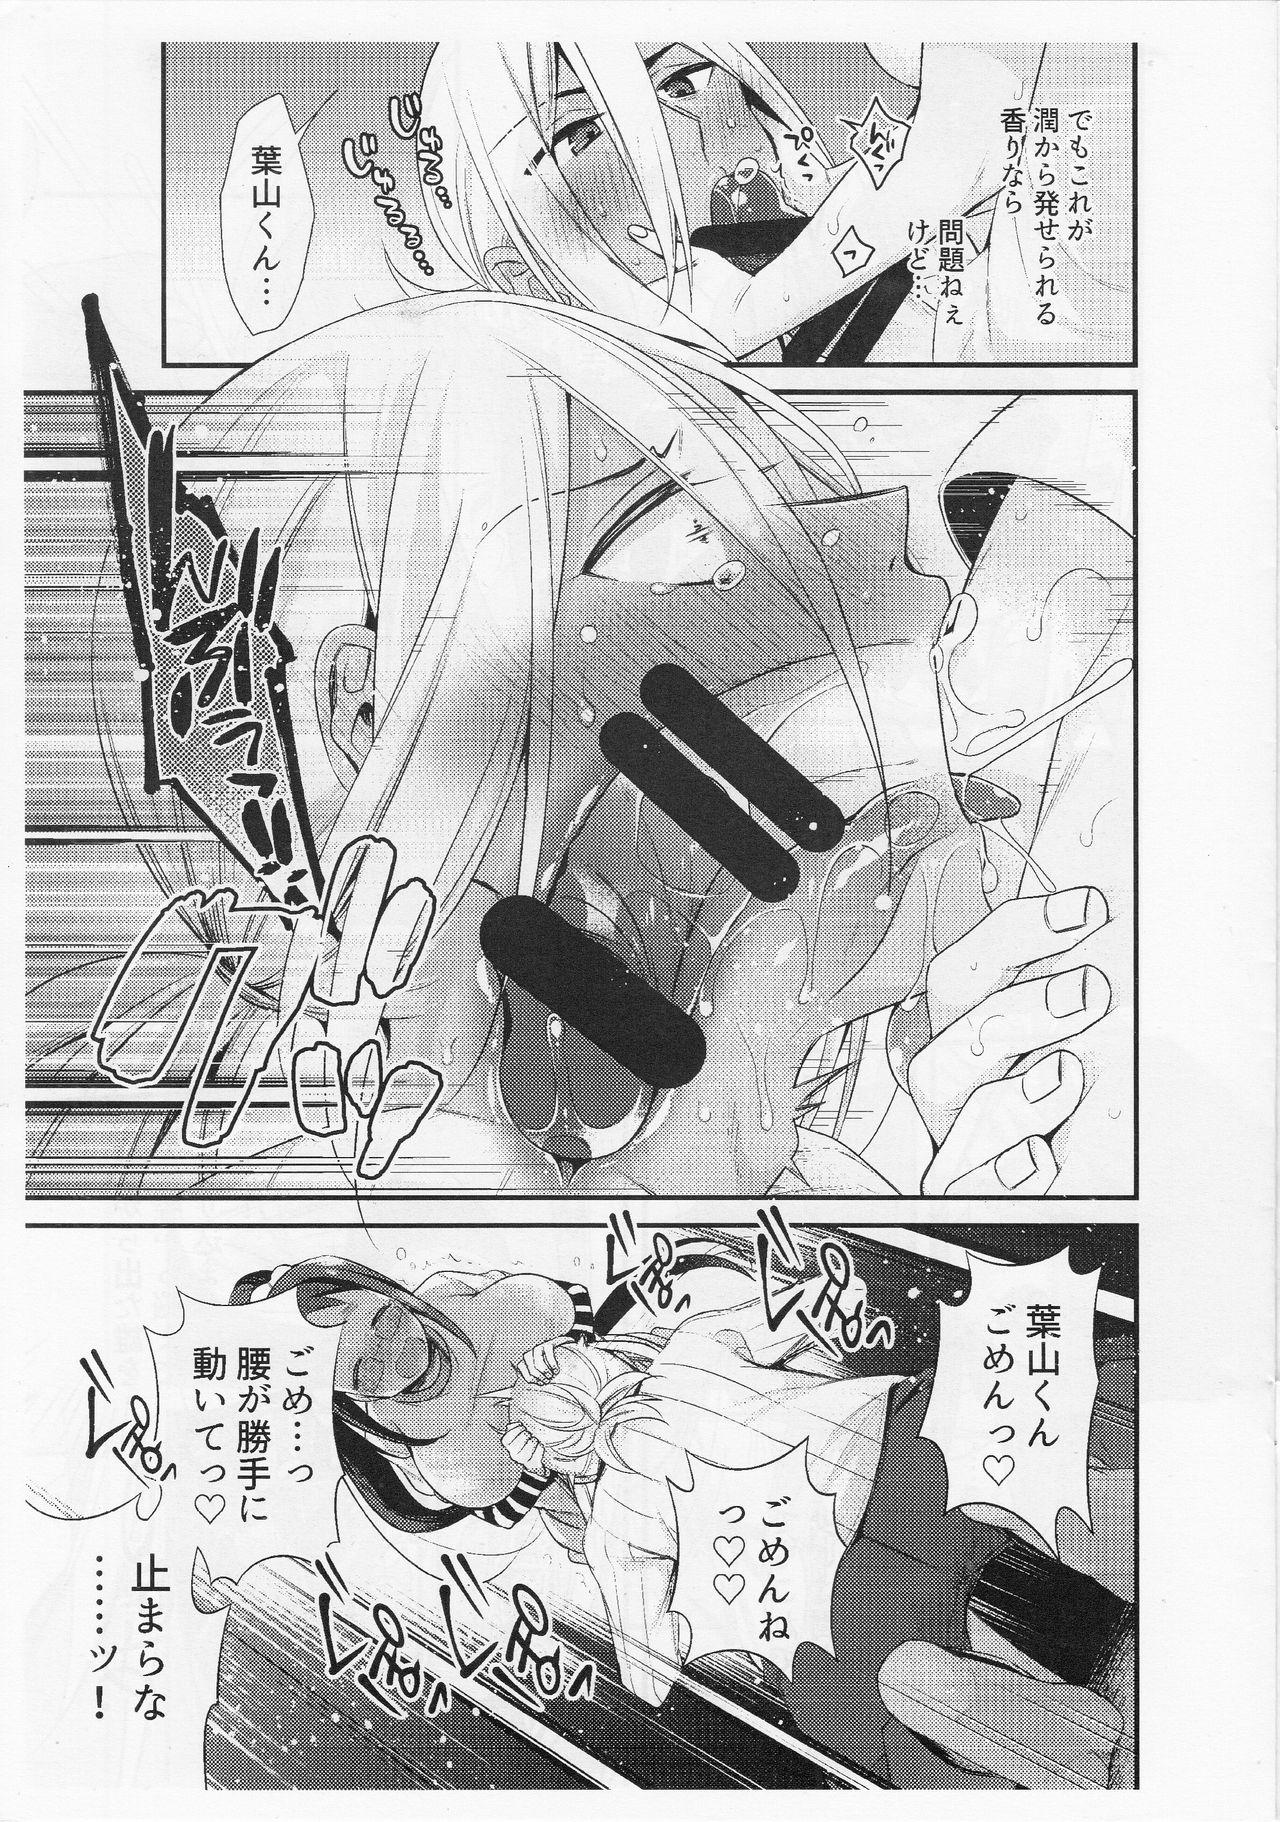 Smooth 【コピー誌】助けて!葉山くん - Shokugeki no soma Ass Licking - Page 5